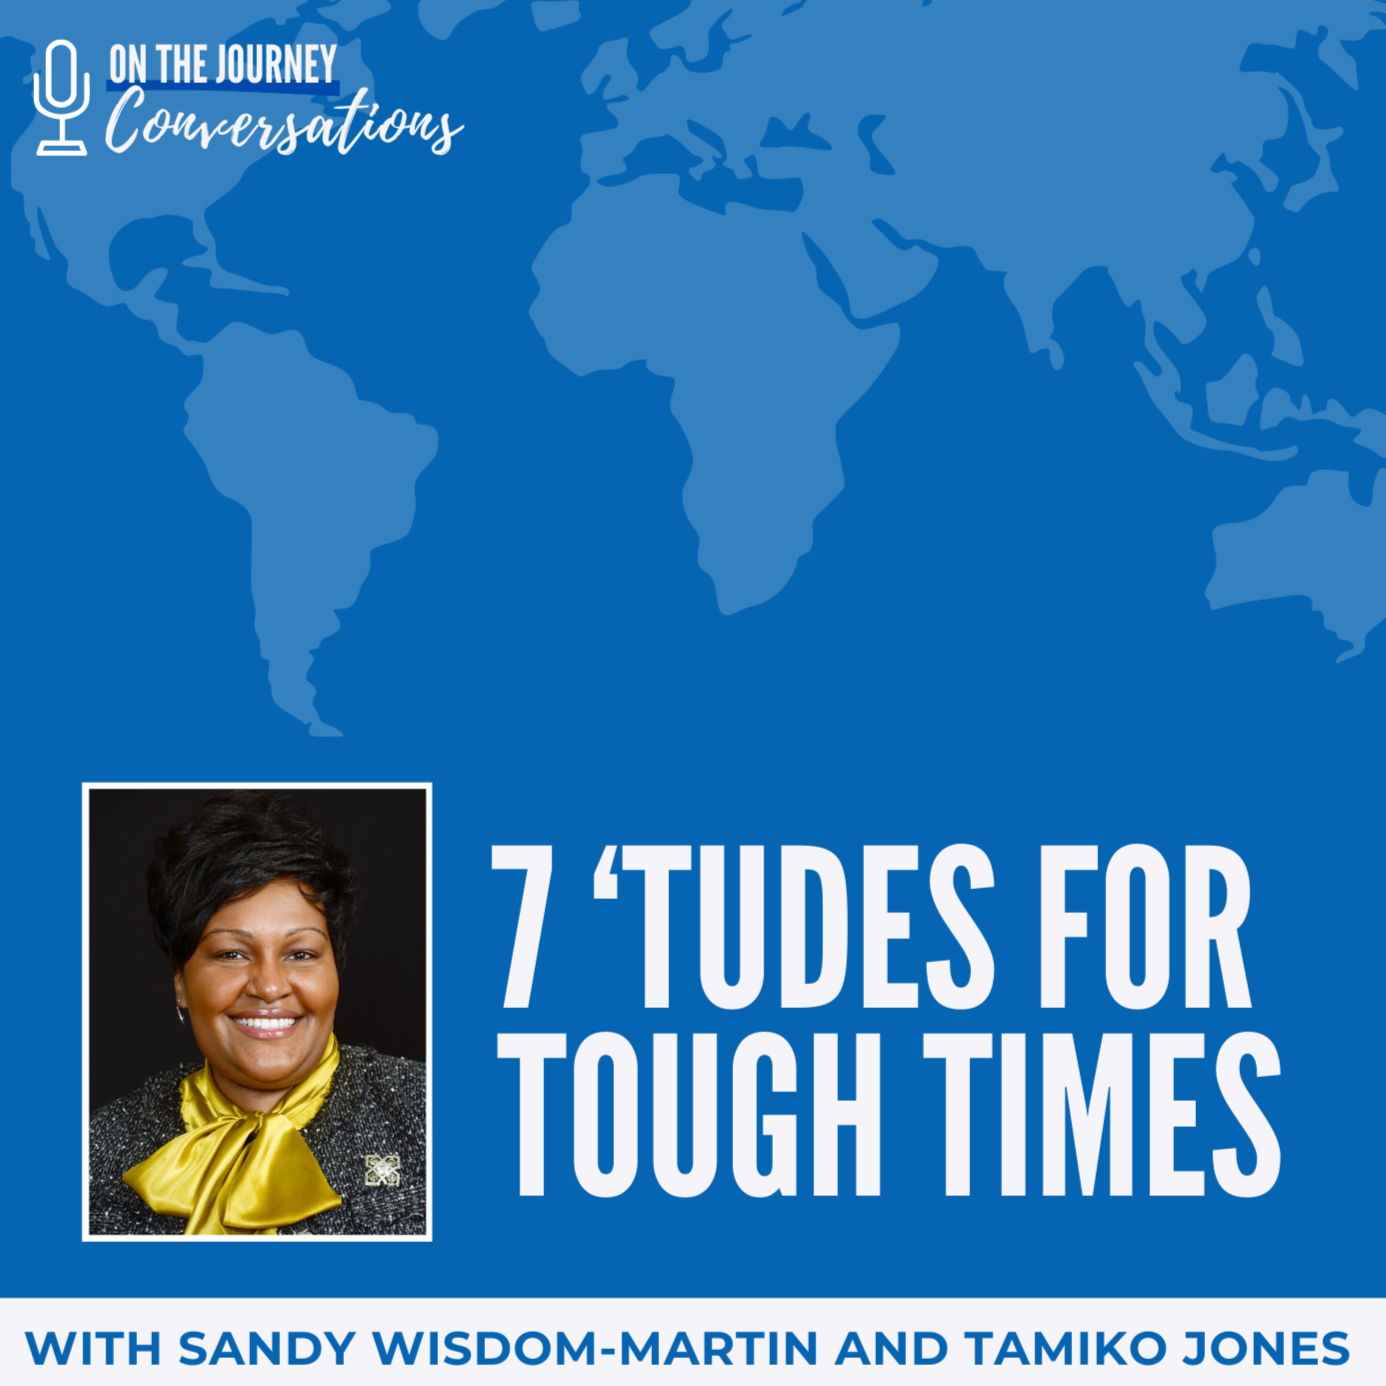 7 ‘Tudes for Tough Times